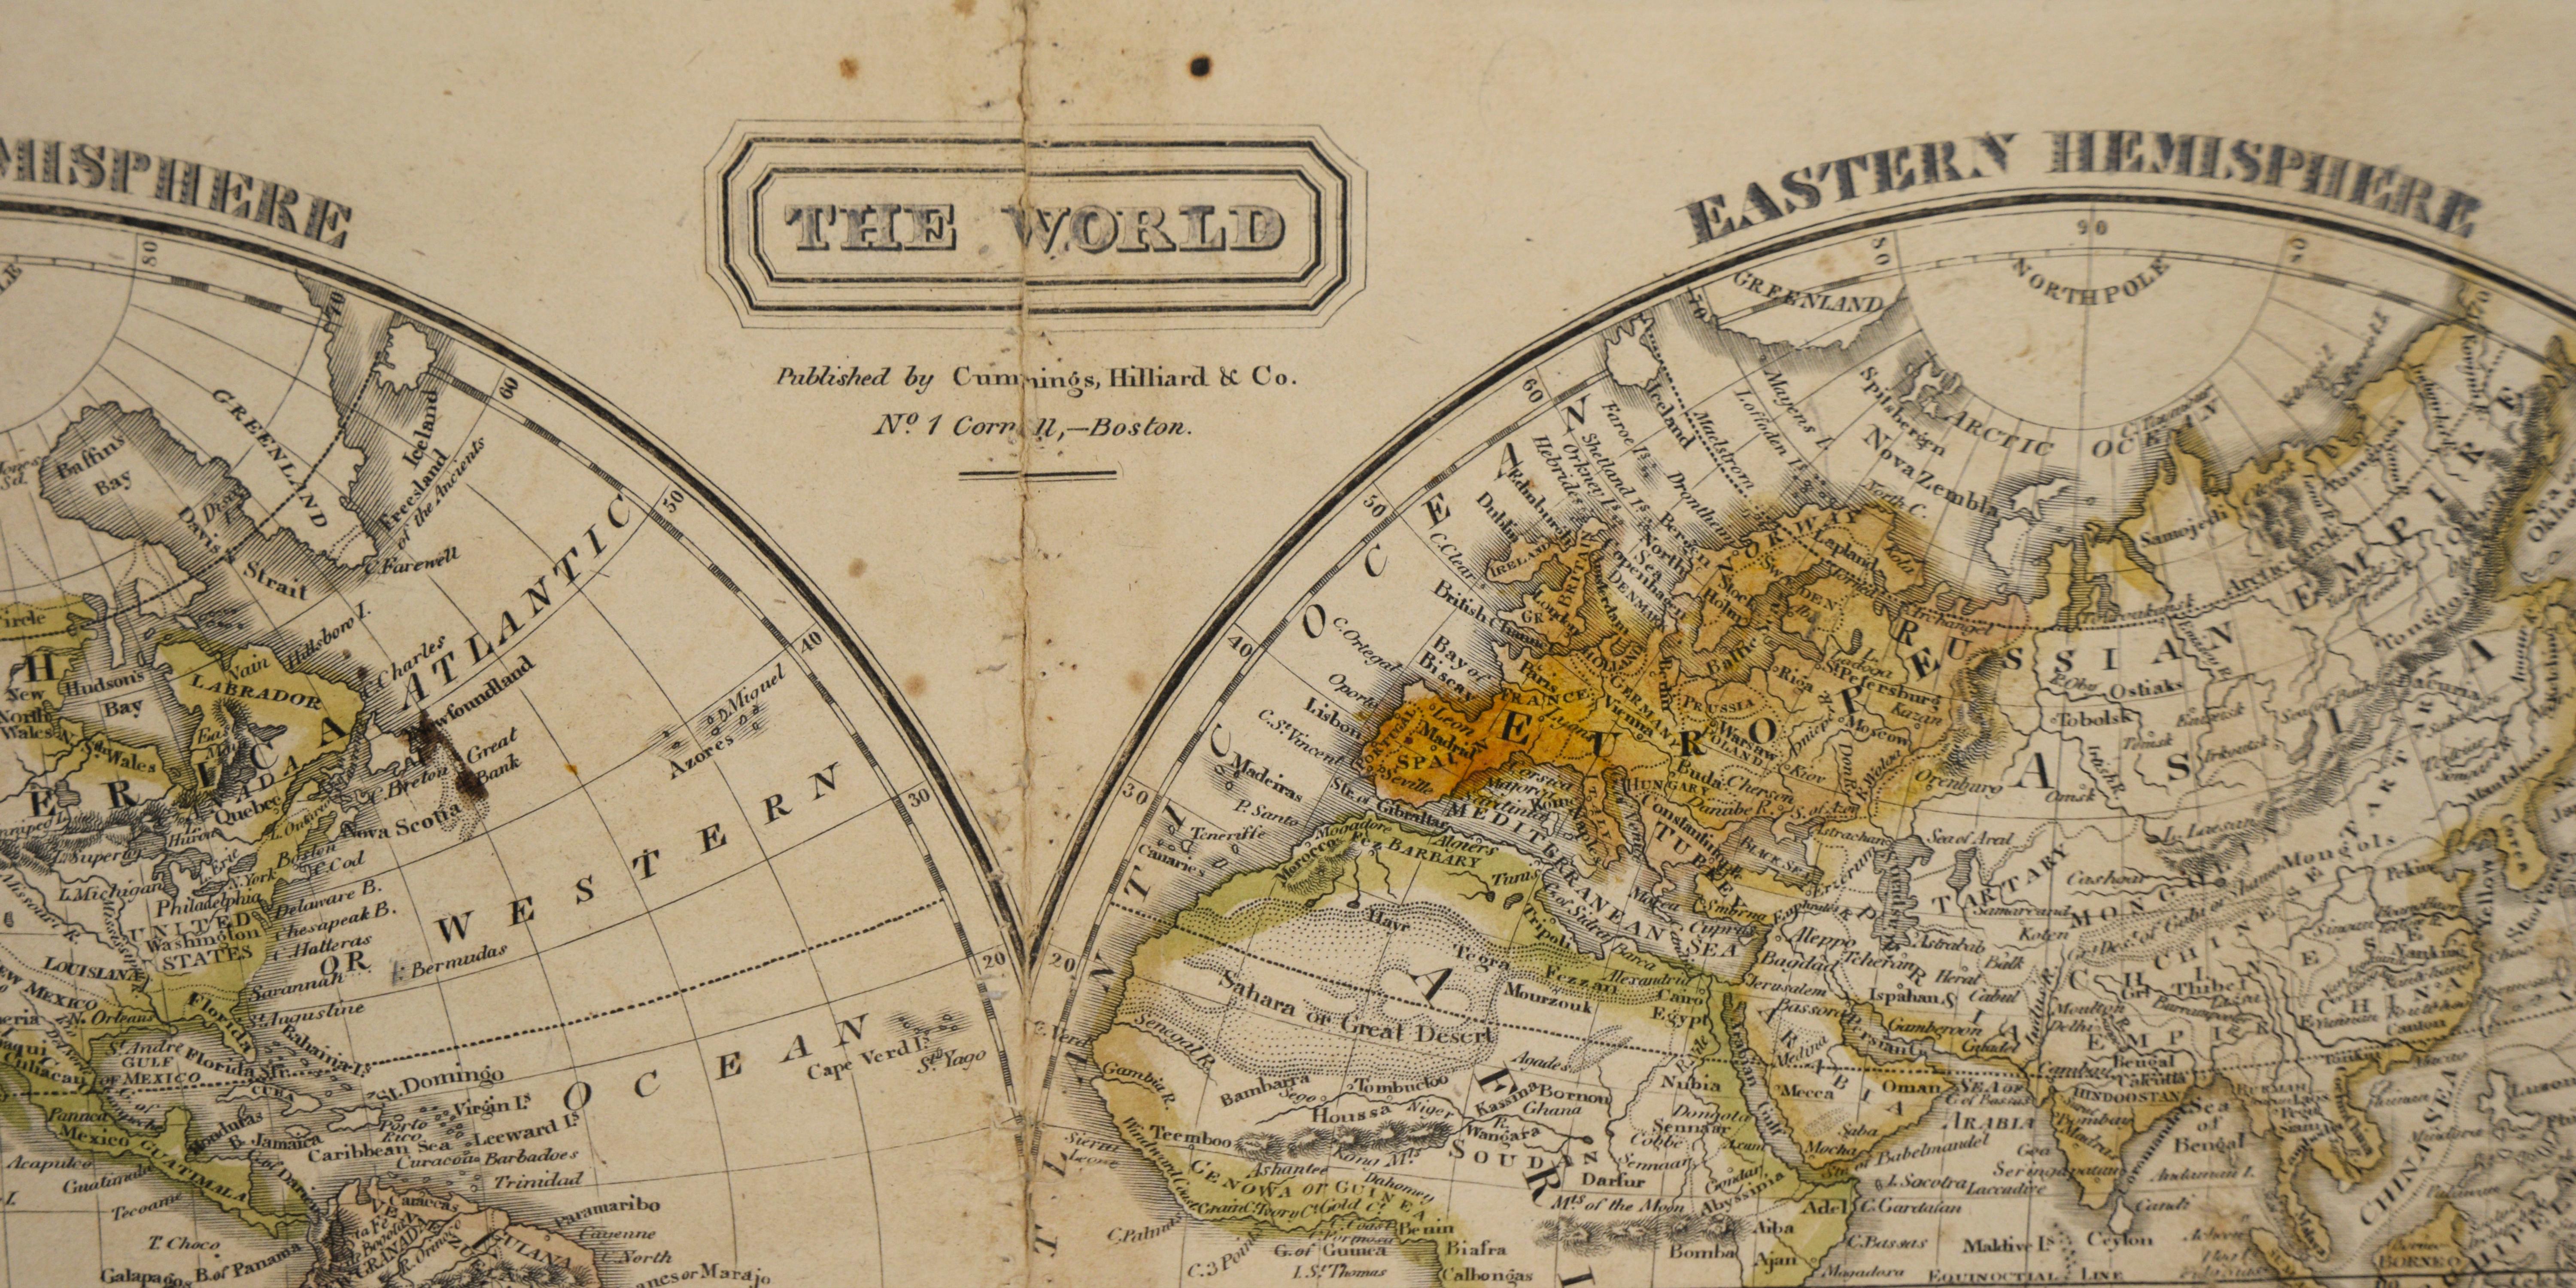 „The World“ Herausgegeben von Cummings & Hilliard, Nr. 1, Cornhill, Boston

Gestochene Doppel-Hemisphären-Atlas-Karte aus dem frühen 19. Jahrhundert mit dem Titel 